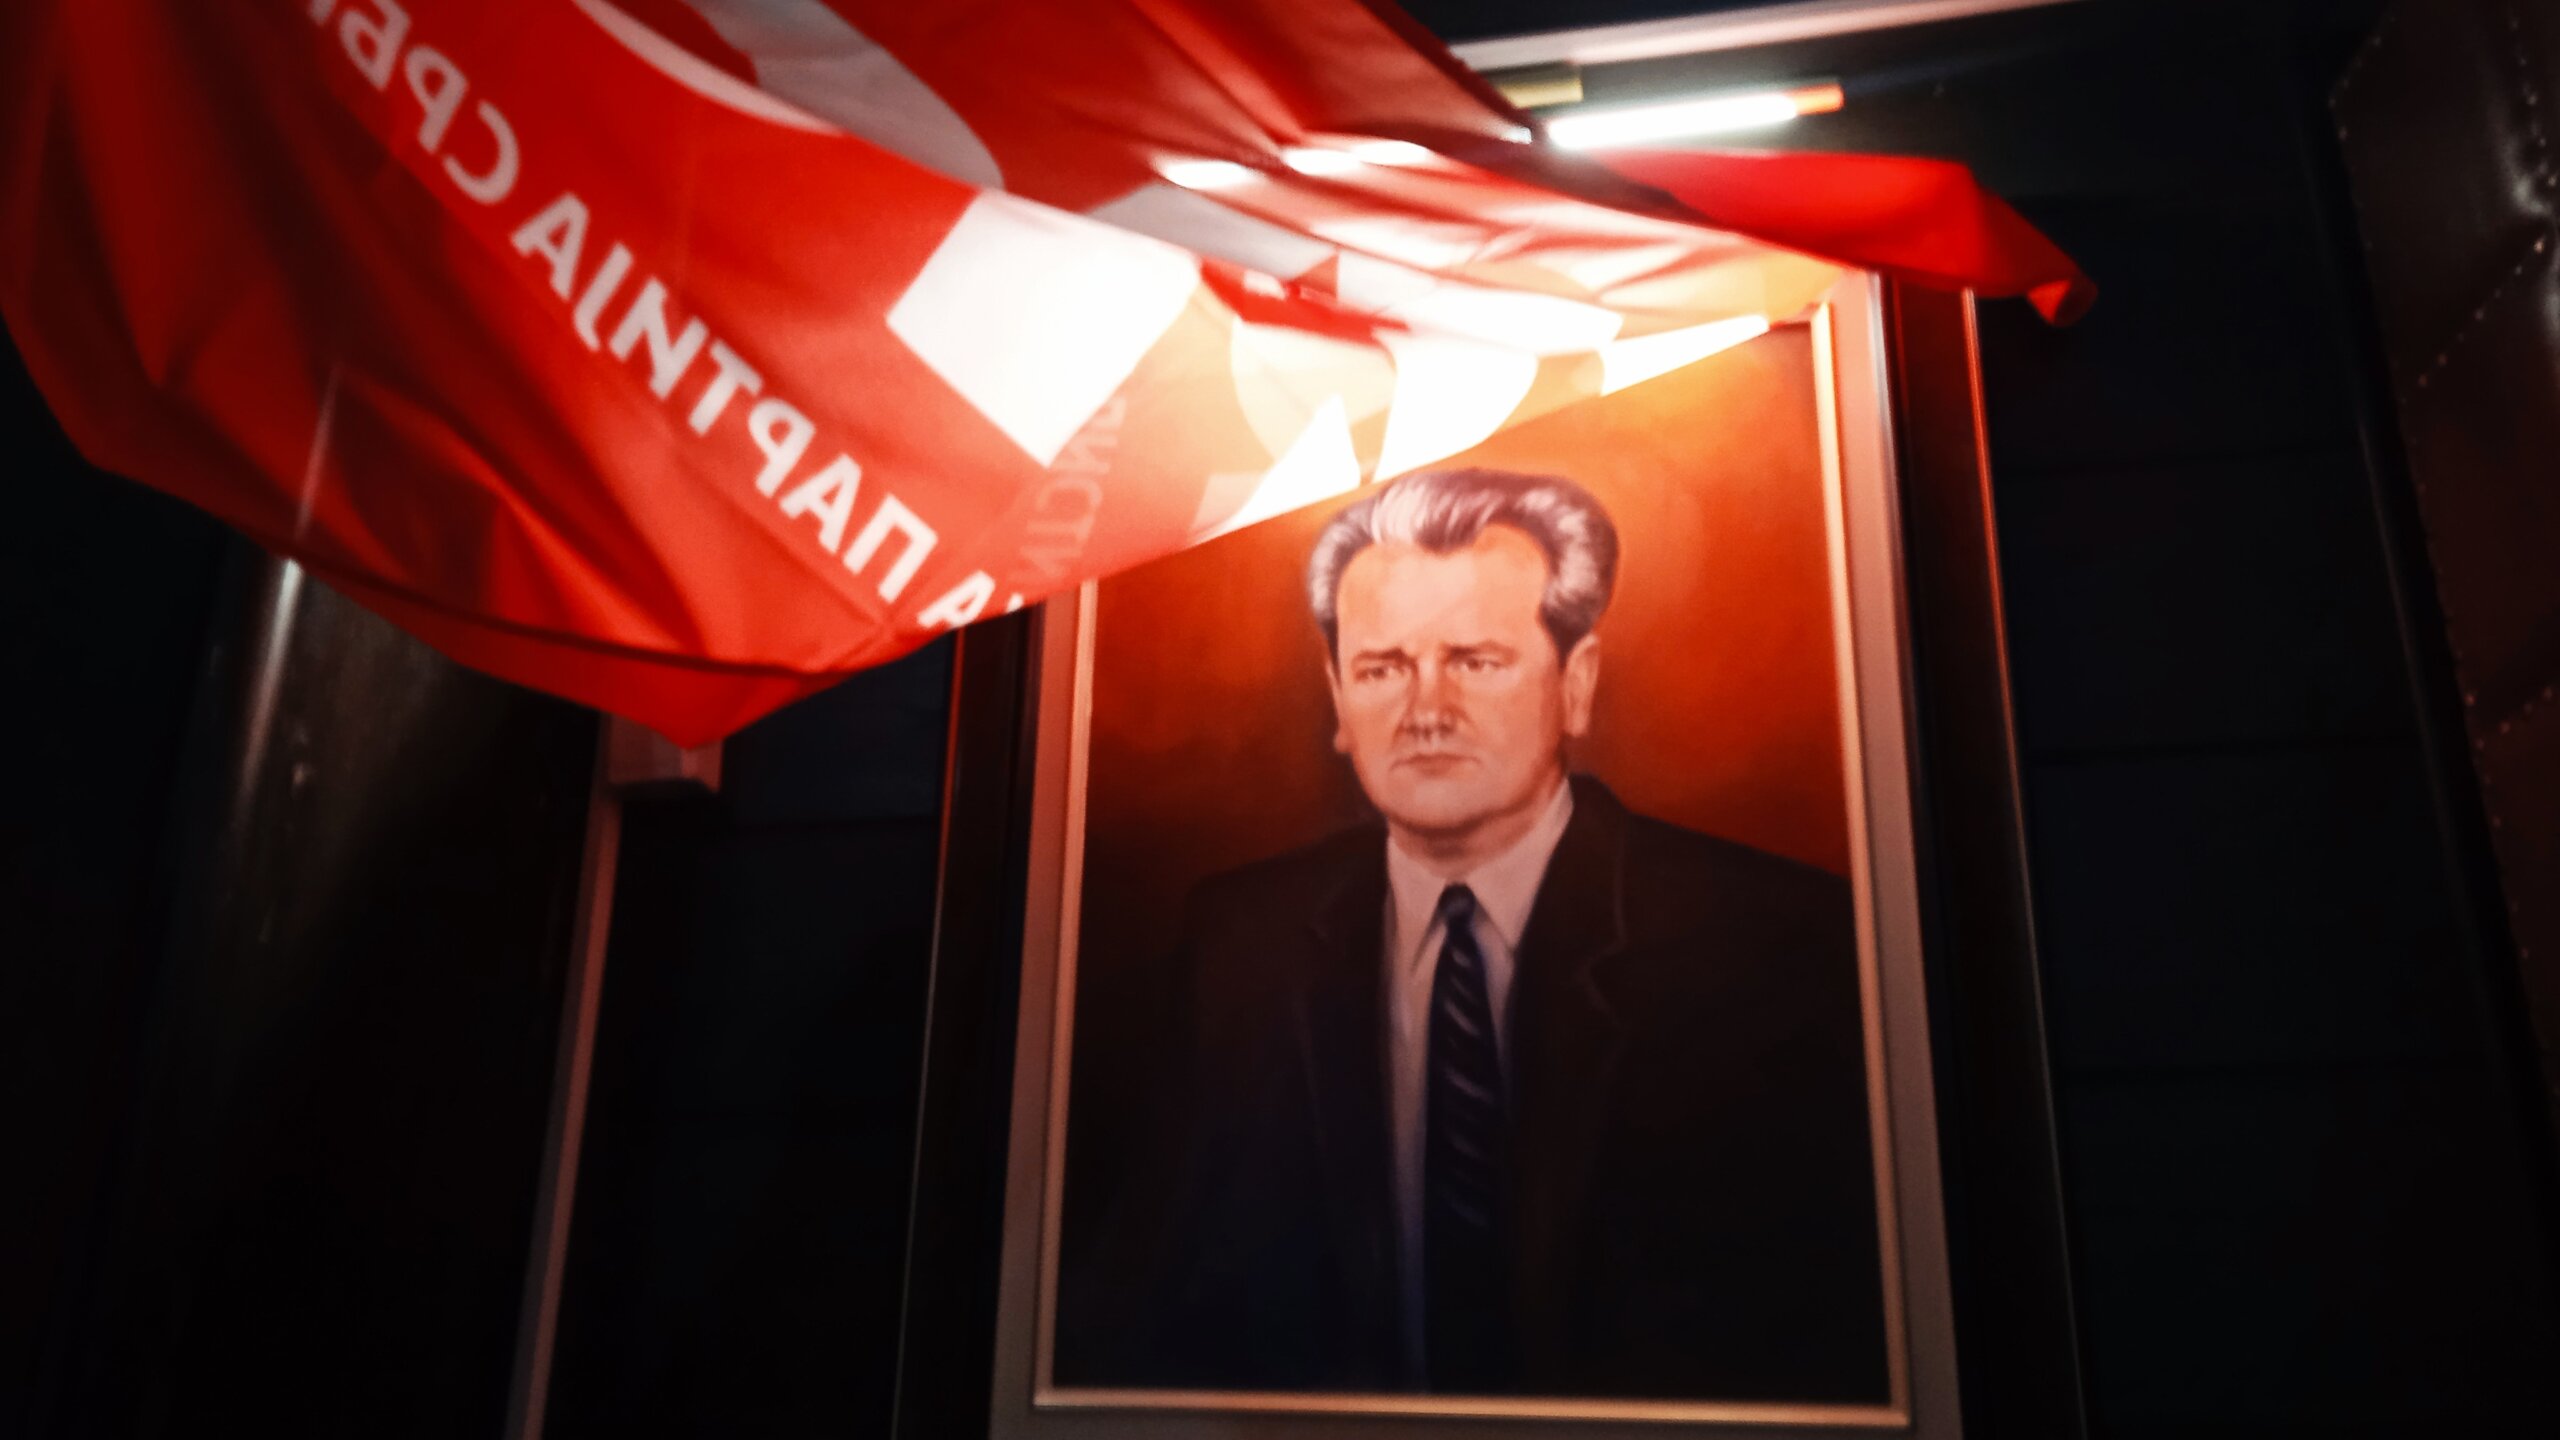 Povratak u budućnost: Kontroverze spomen sale Slobodanu Miloševiću u Nišu 3